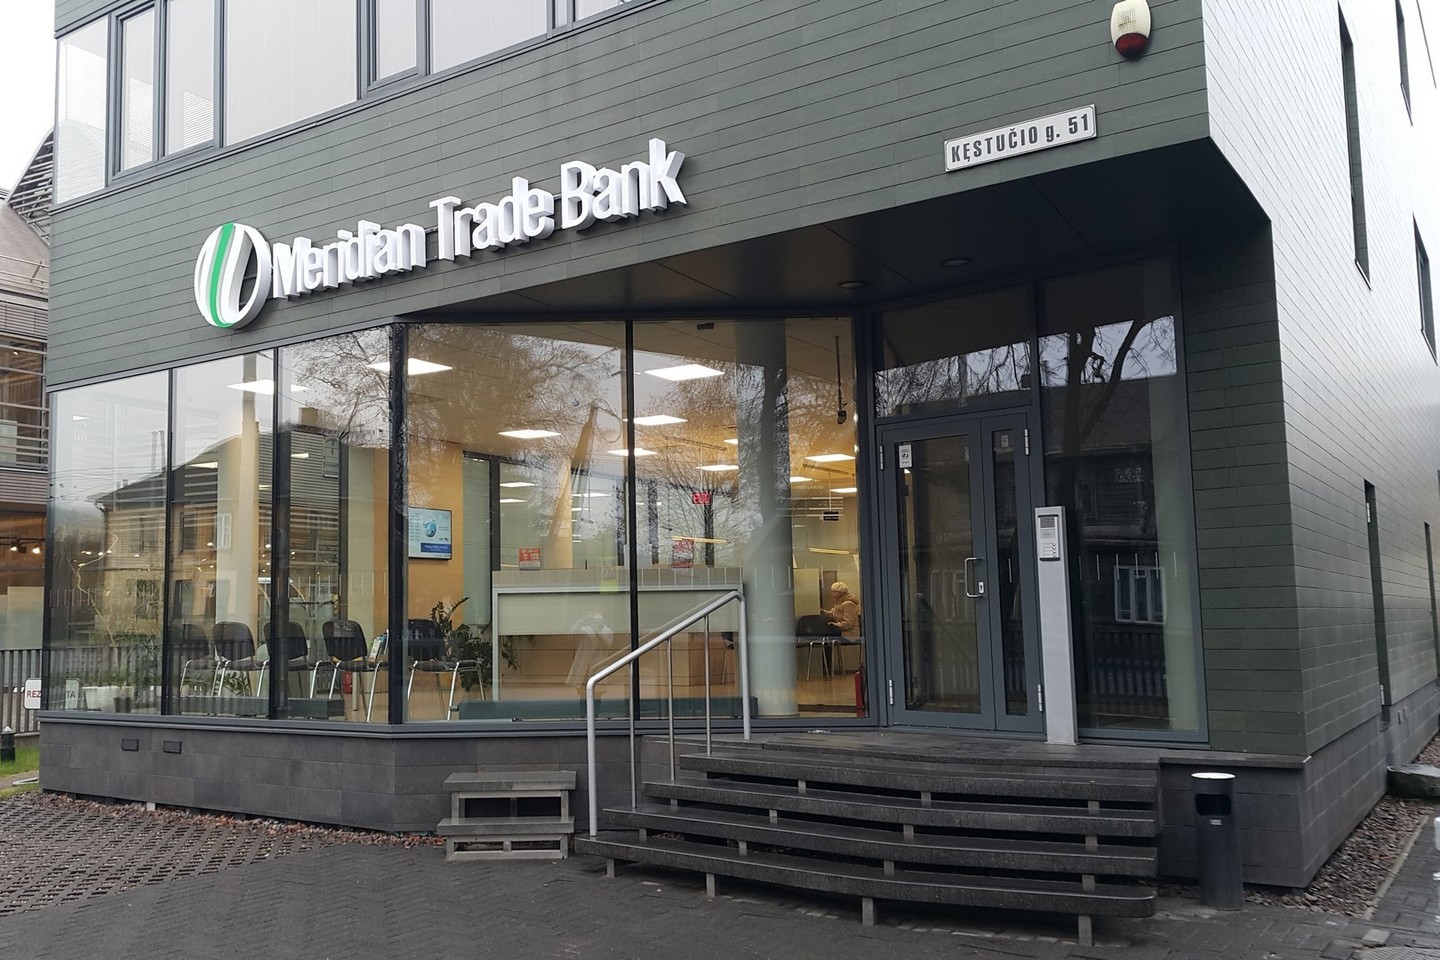 Latvijos „Meridian Trade Bank“ turi filialų ir Lietuvoje.